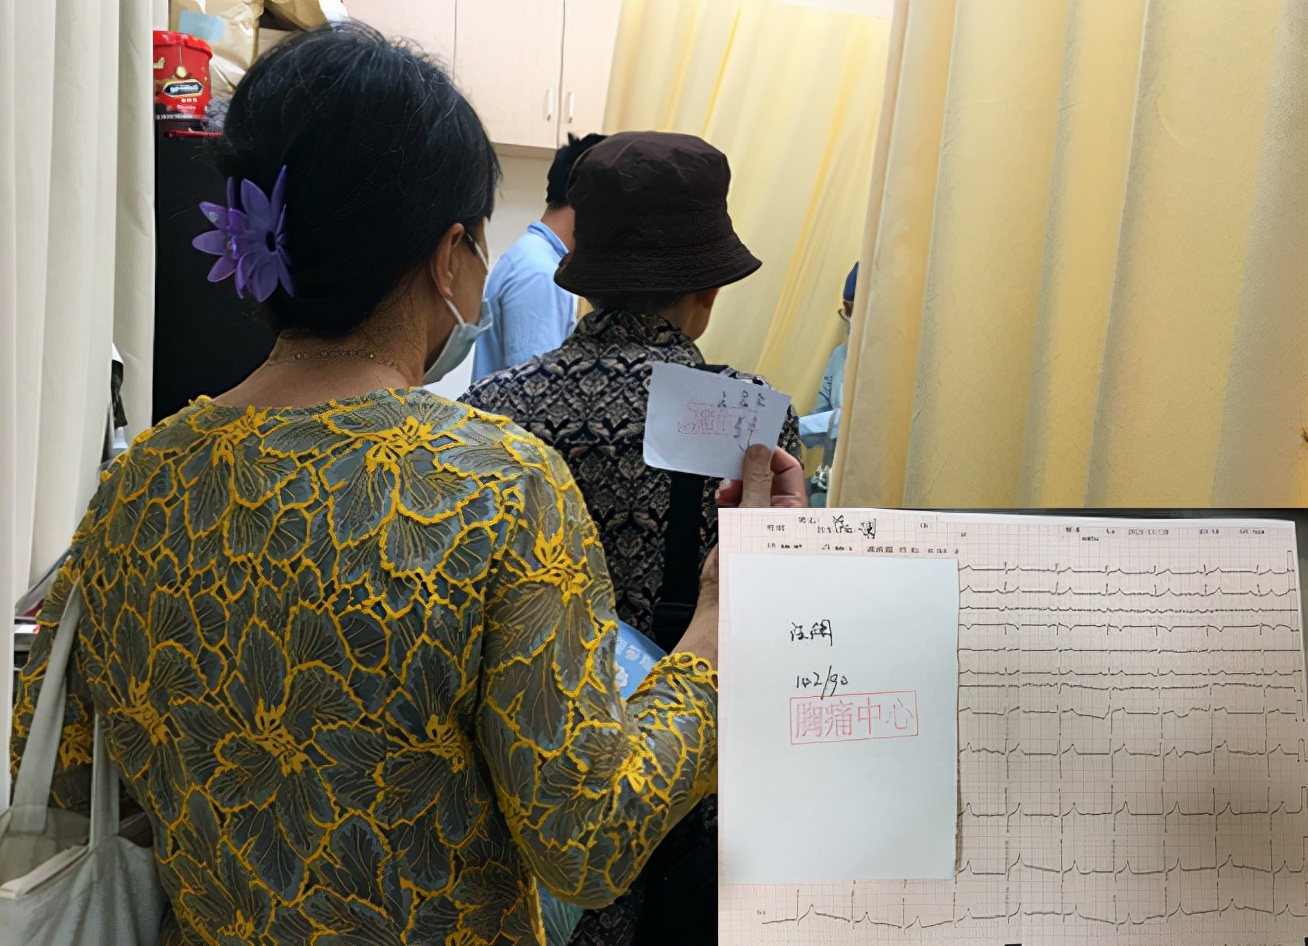 中国心梗救治日公益义诊来了——双色球基本走势图胸痛中心举行大型义诊宣传活动